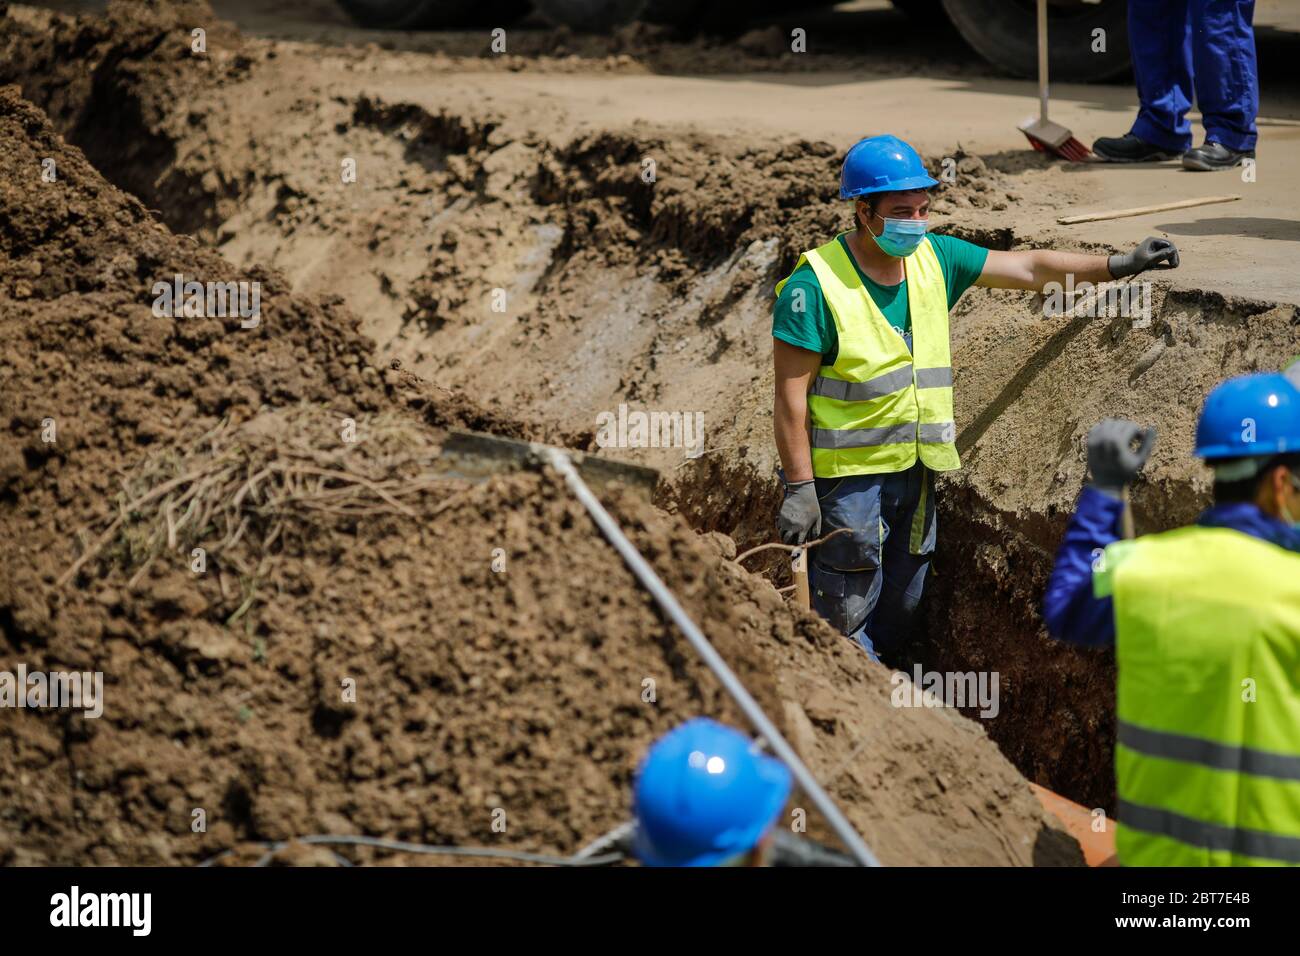 Bukarest, Rumänien - 8. Mai 2020: Bauarbeiter auf einer Baustelle mit Schutzmasken wegen des Ausbruchs von Covid-19. Stockfoto